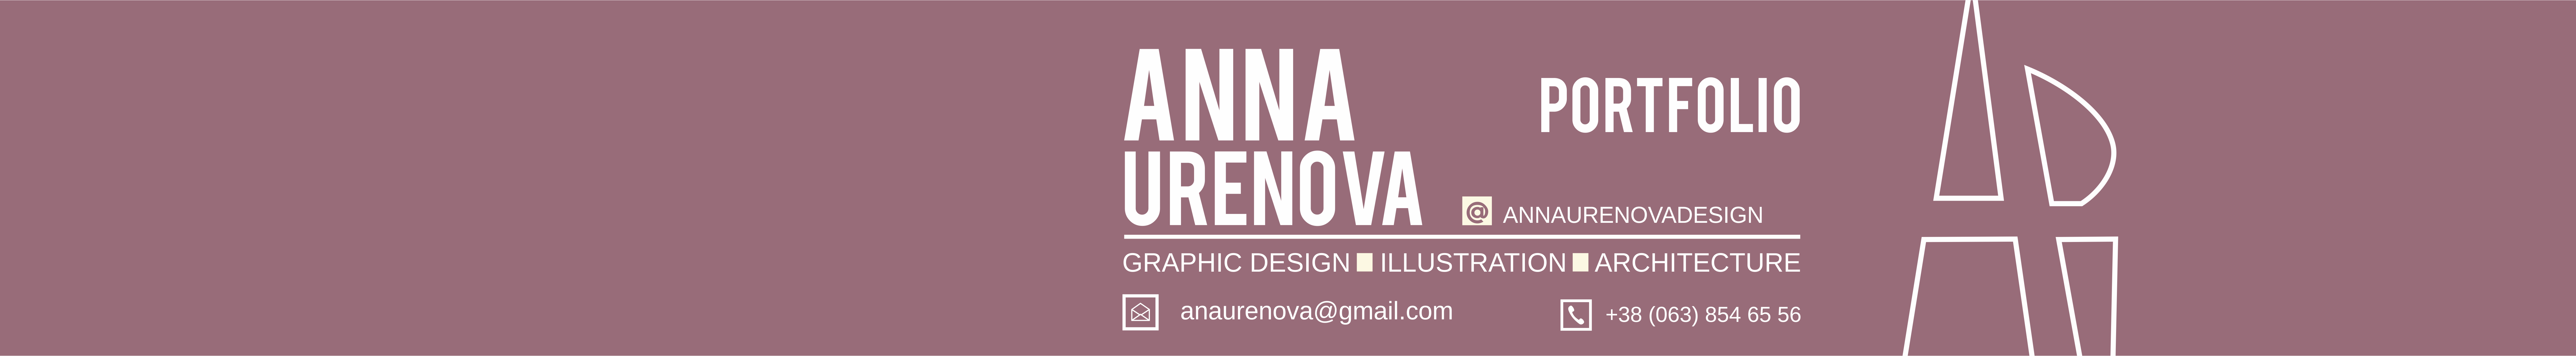 Profielbanner van Anna Ureñova